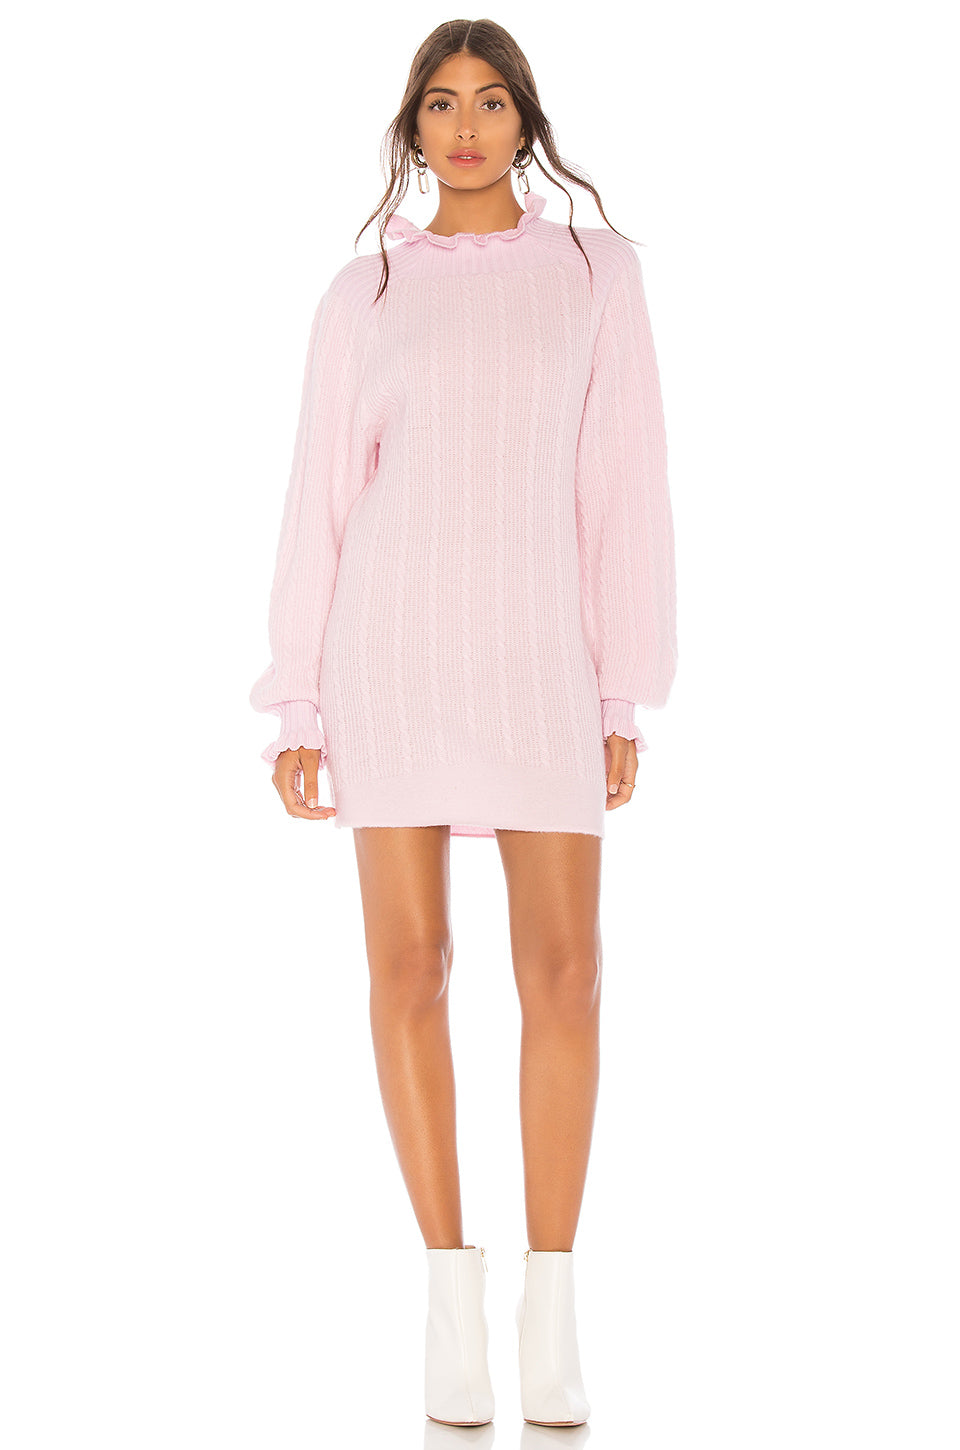 Lottie Sweater Dress in BLUSH PINK